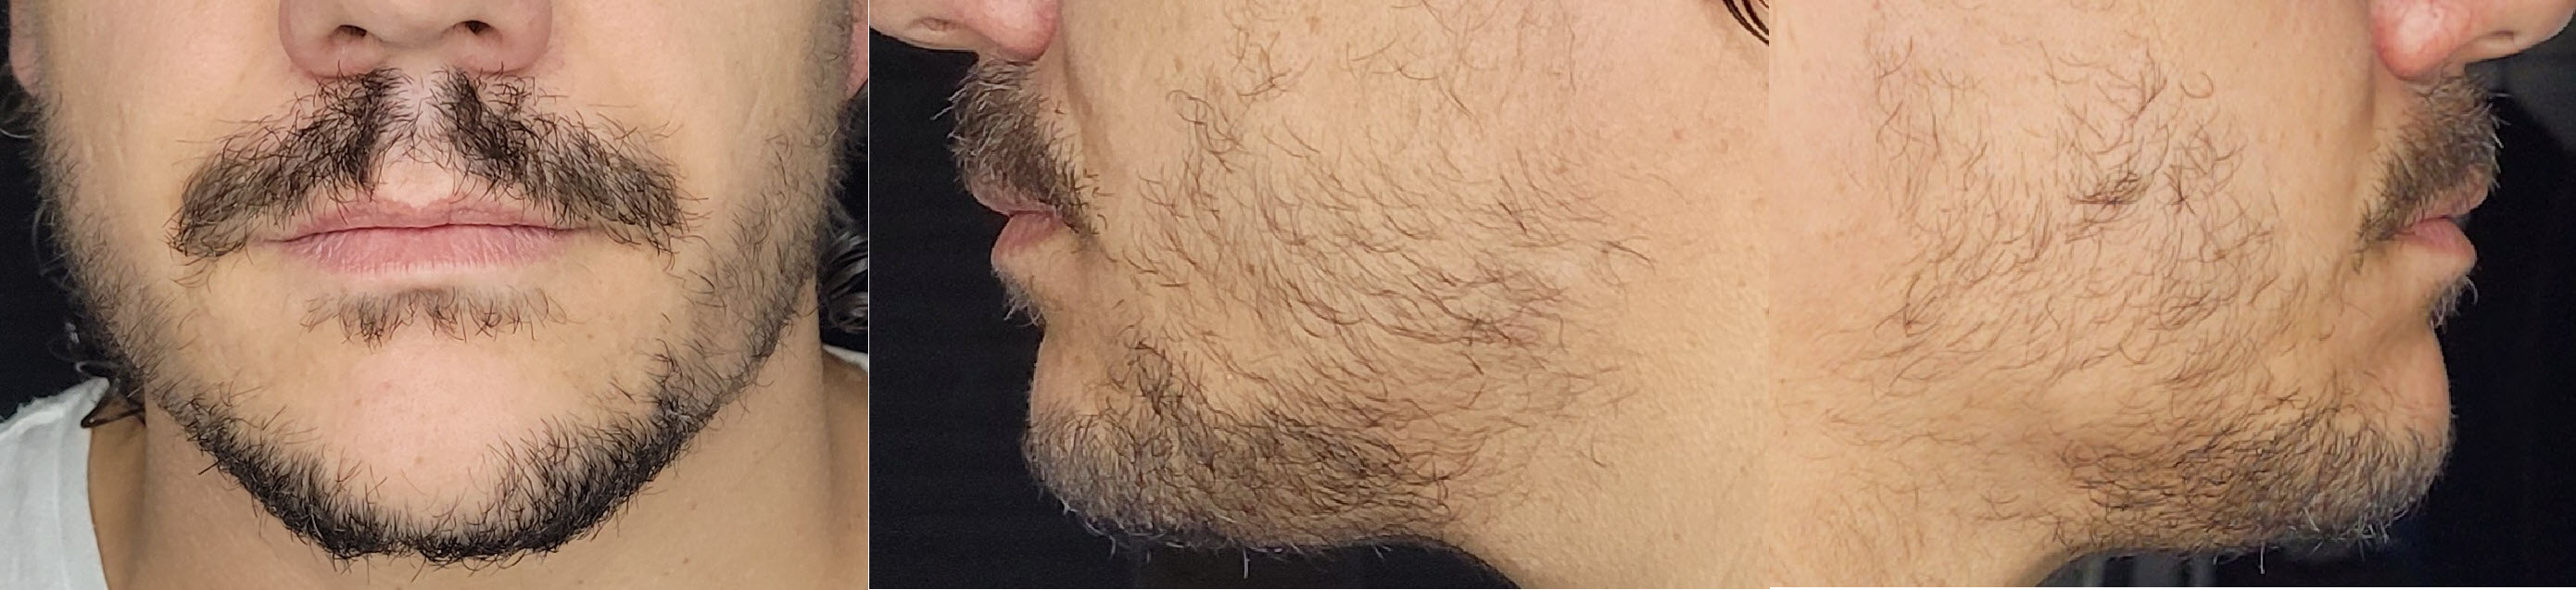 blog/growing-a-beard/2021-07-18.jpg